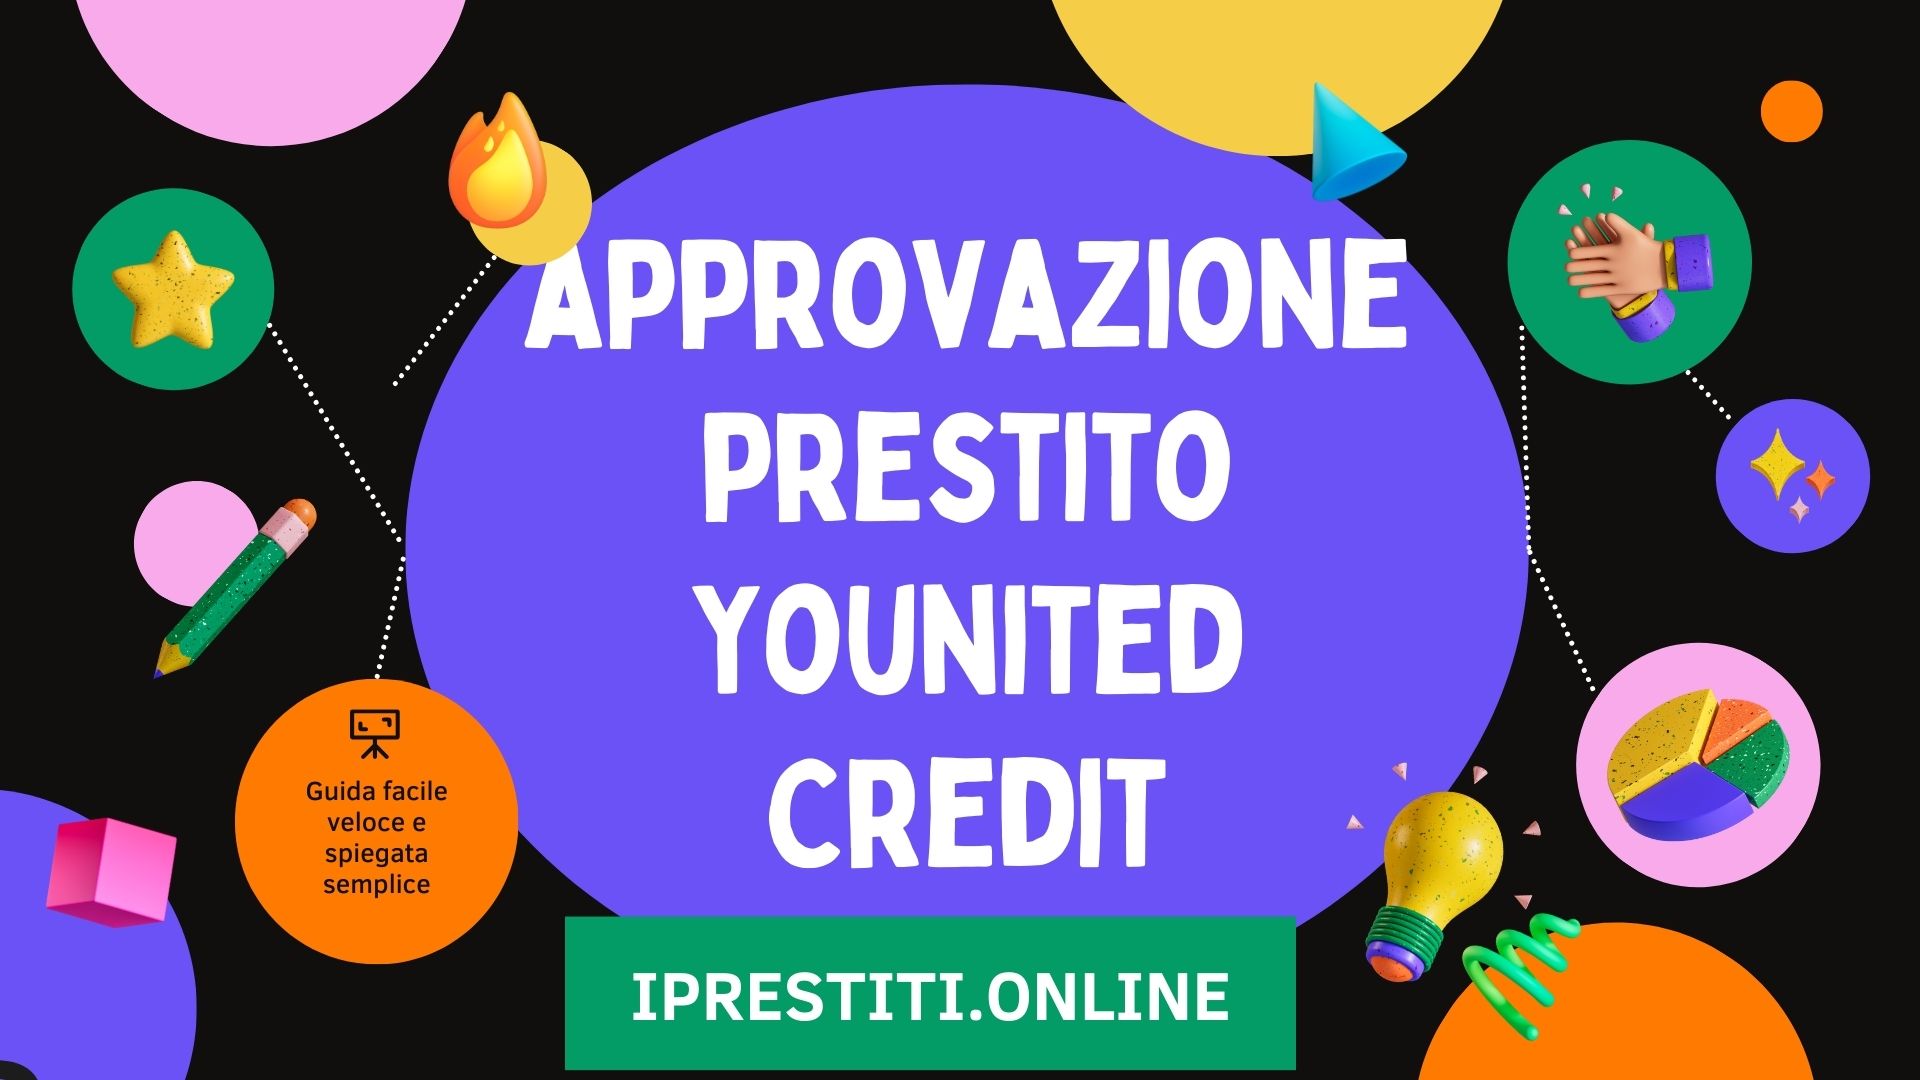 Approvazione prestito Younited Credit